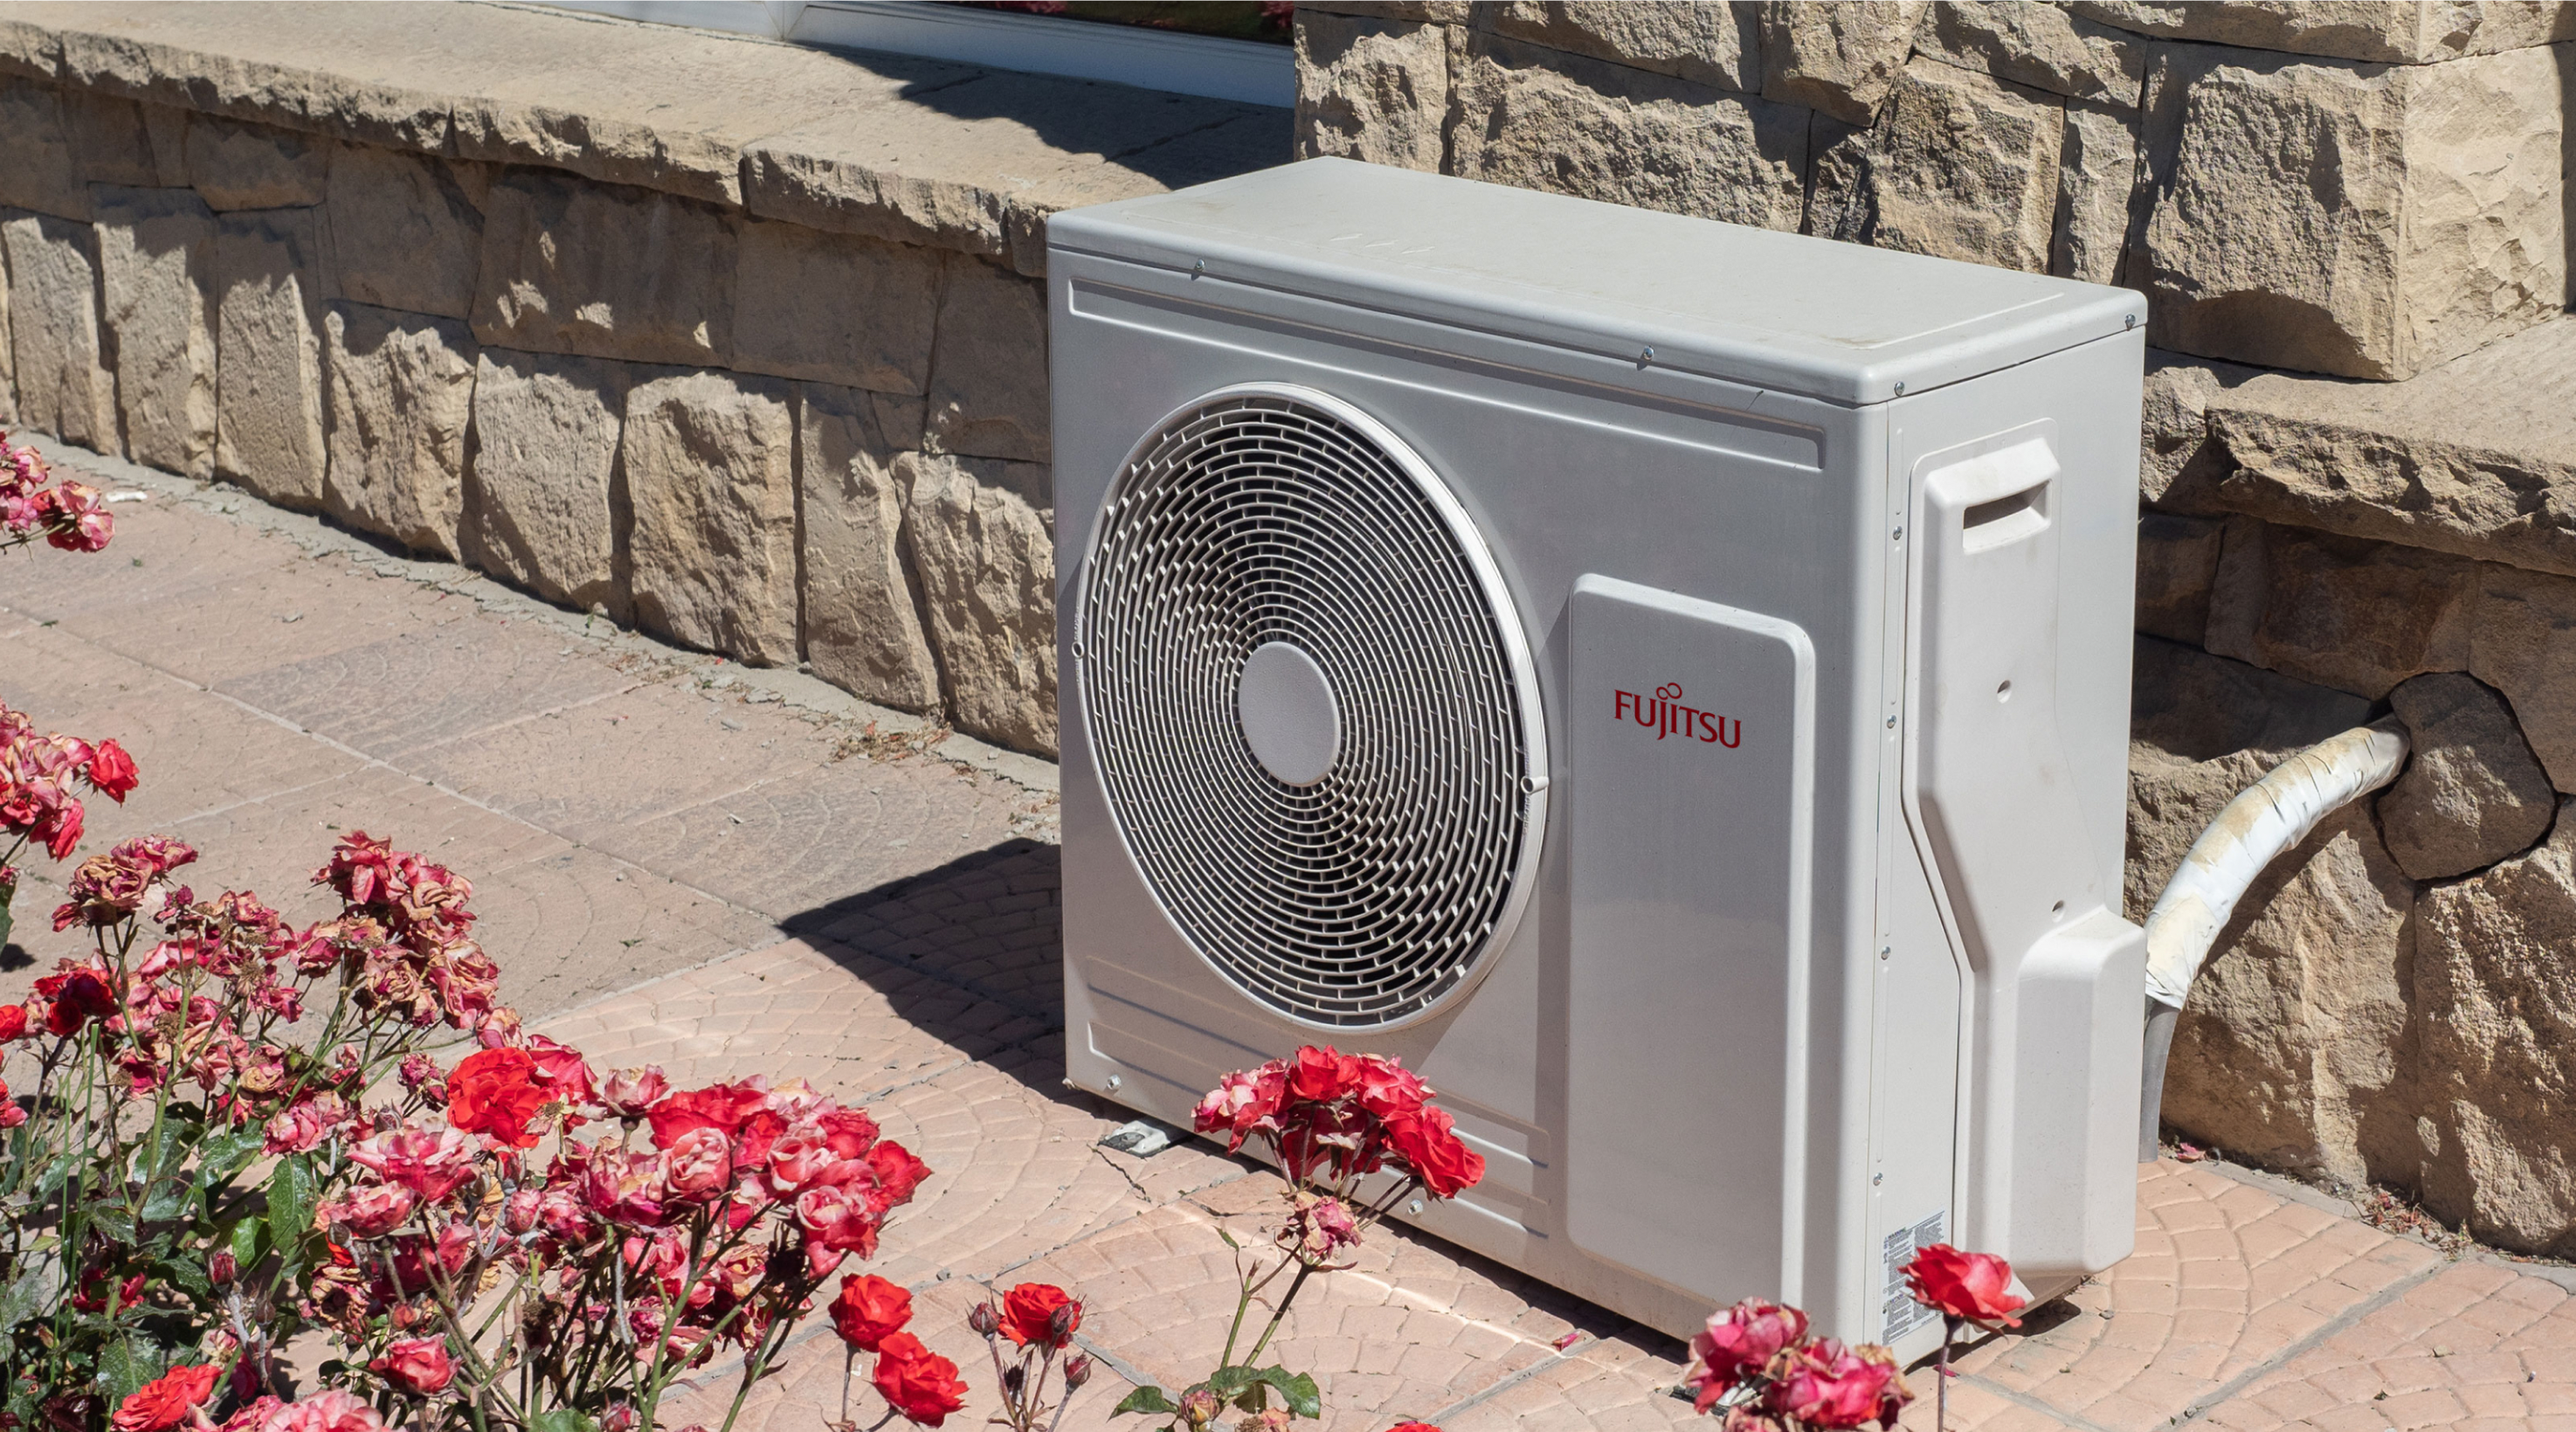 Fujitsu heat pump in spring